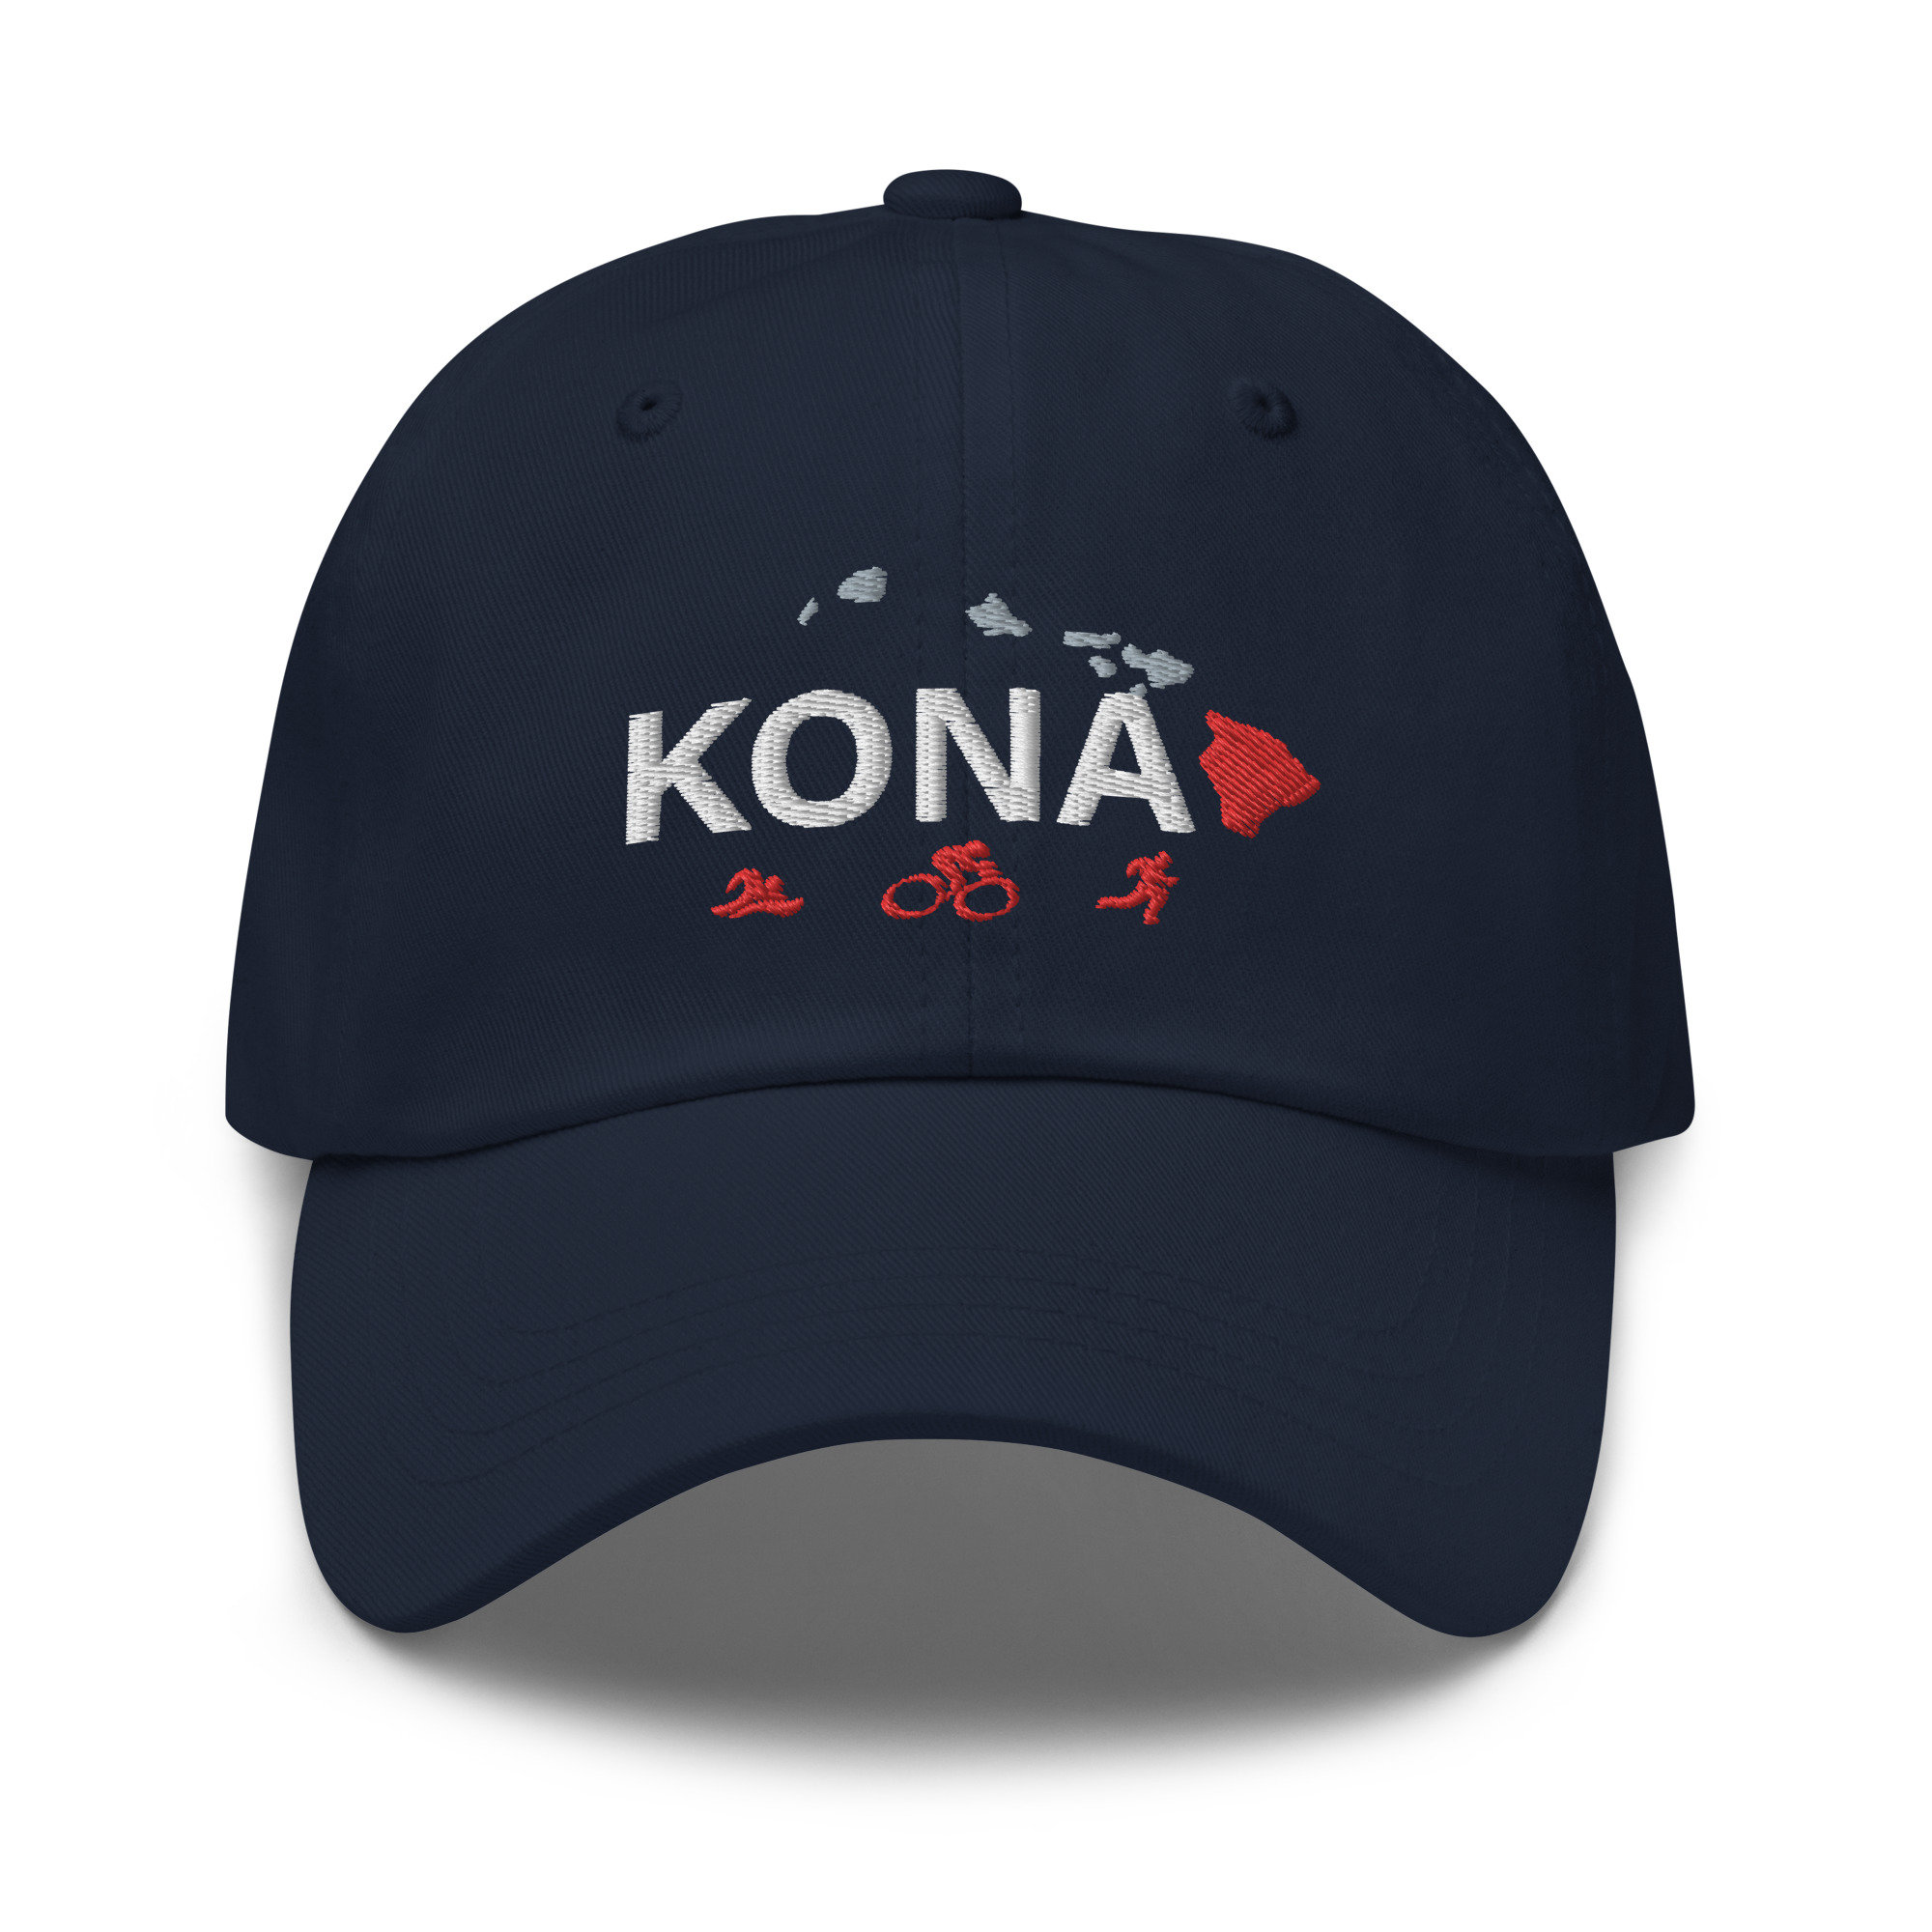 Kona Caps Hawaii -  Canada